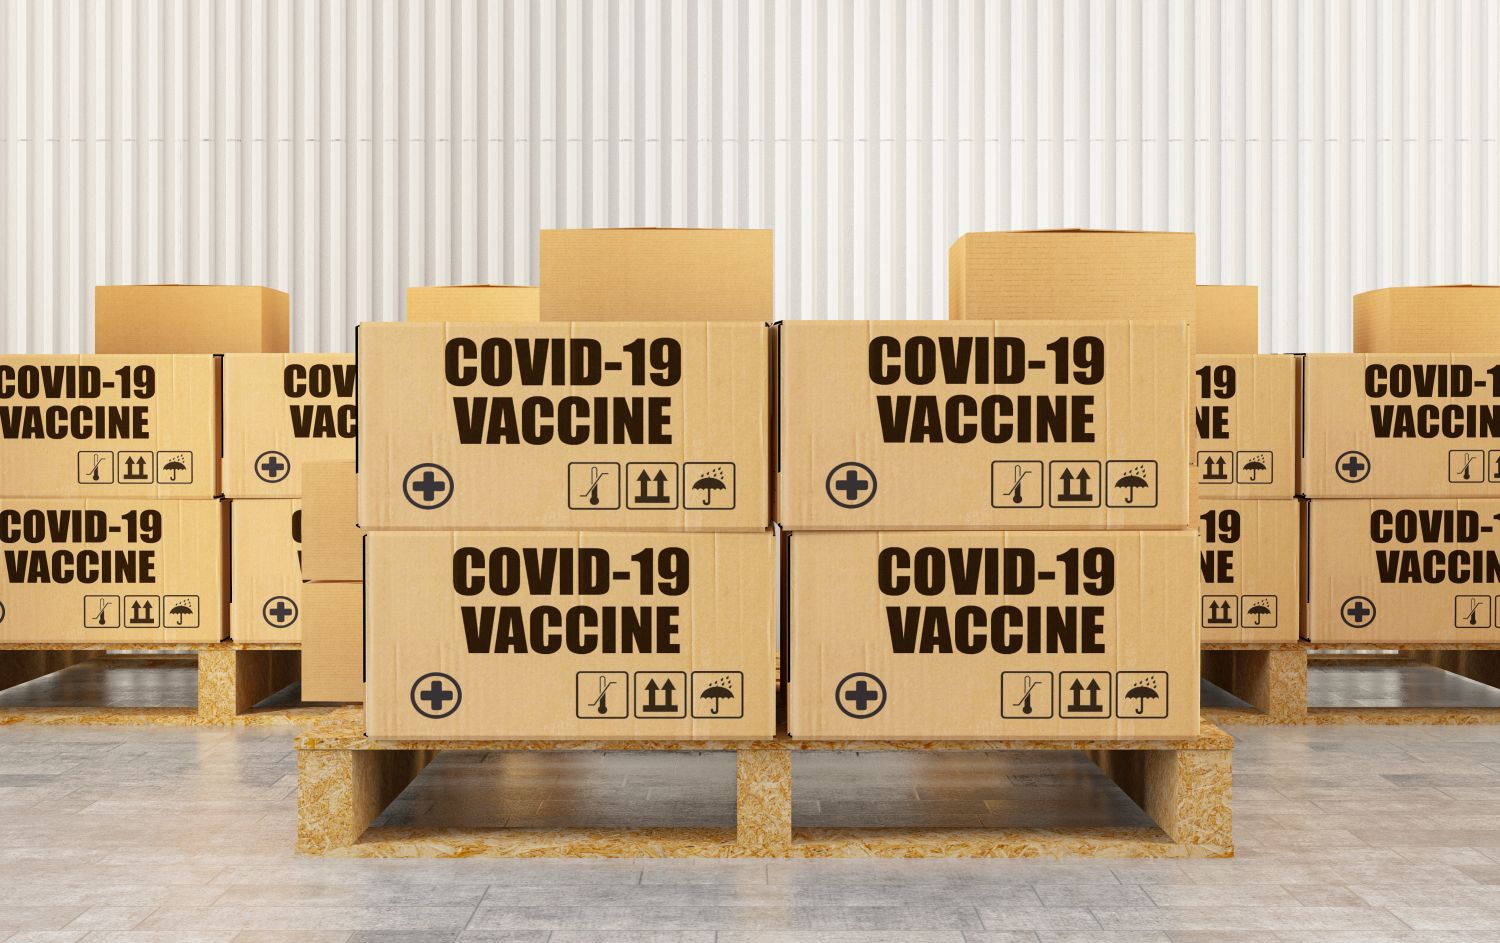 Brevetti, l’Ue presenterà proposta a Wto su licenze obbligatorie vaccini